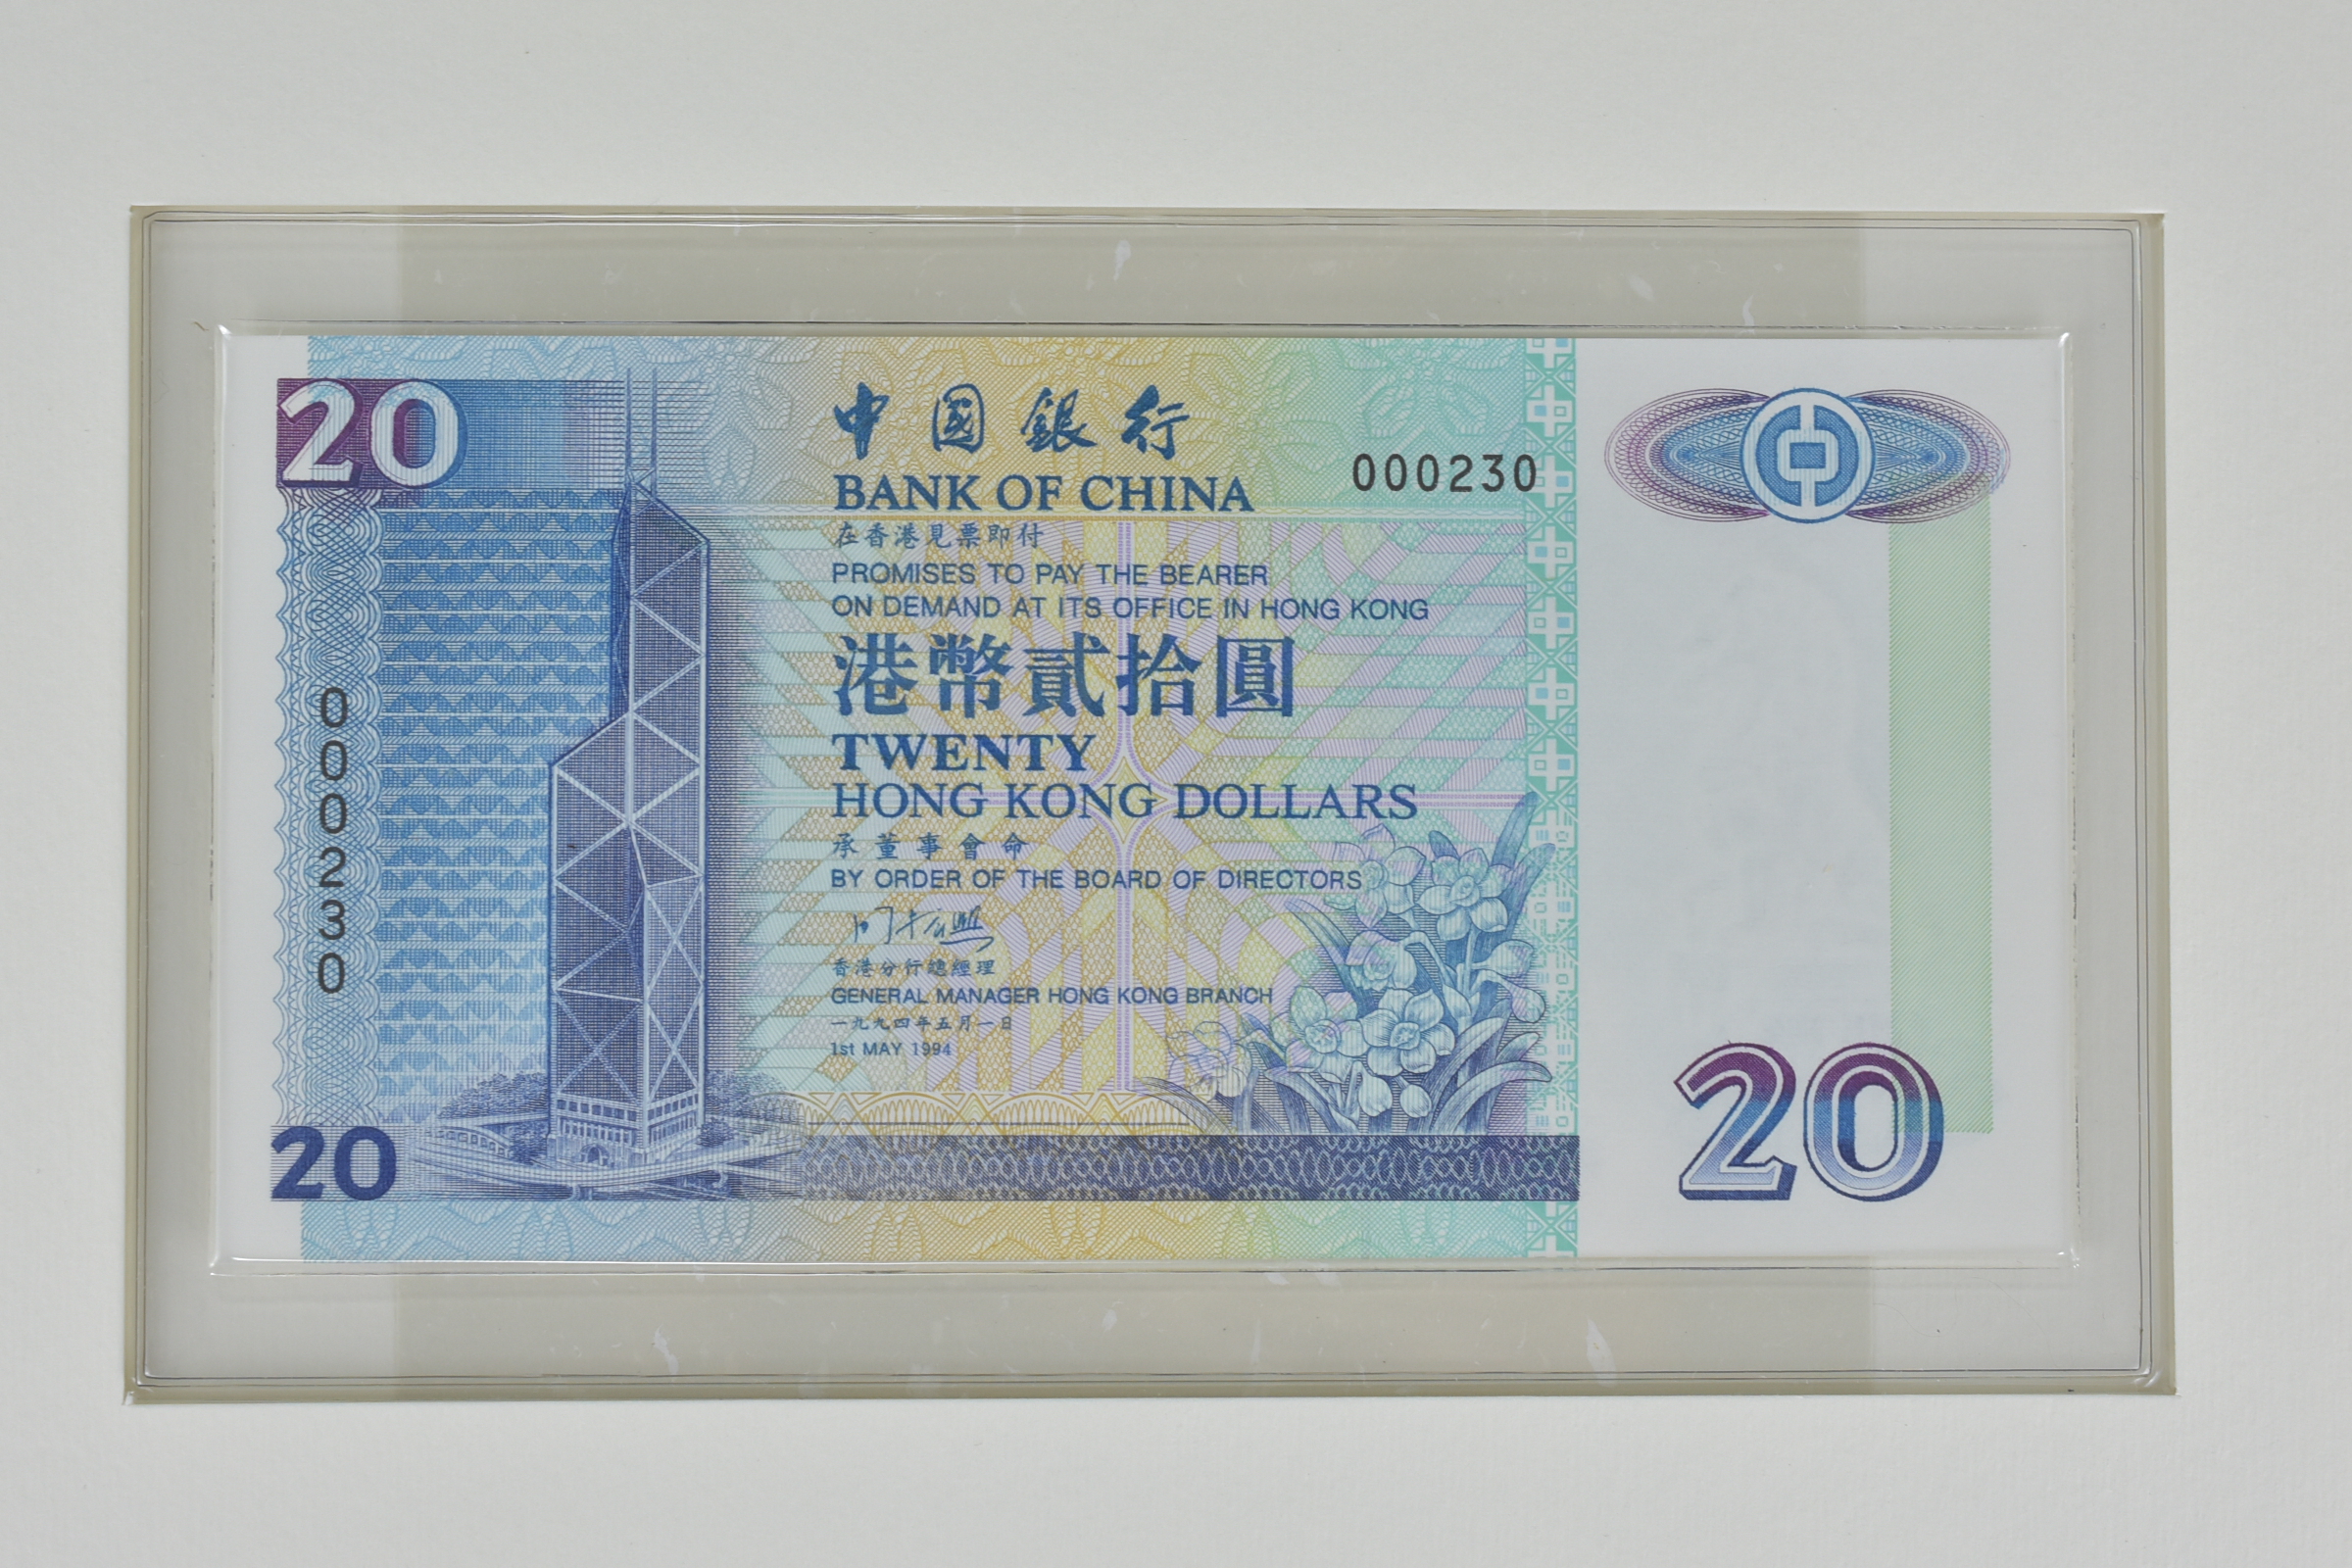 Bank of China Hong Kong Dollar Notes Commemorative set - Image 9 of 12